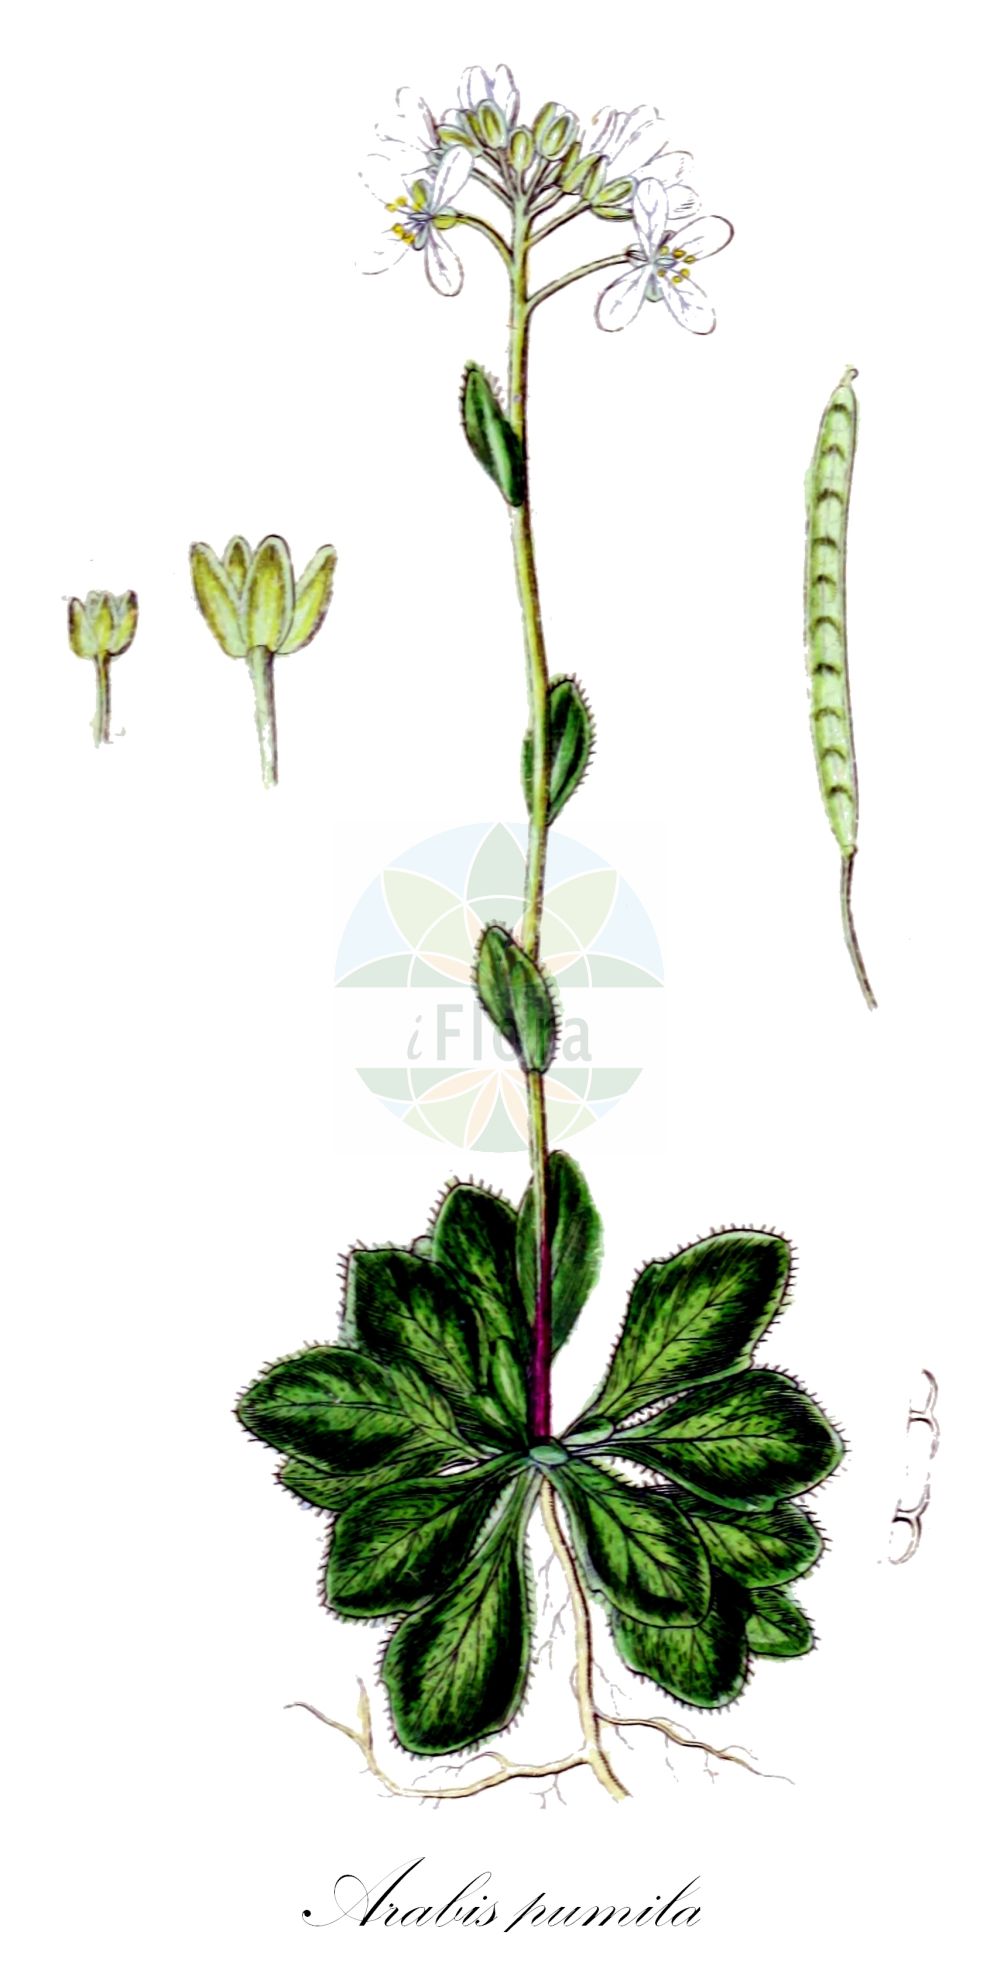 Historische Abbildung von Arabis pumila (Zwerg-Gänsekresse - Dwarf Rockcress). Das Bild zeigt Blatt, Bluete, Frucht und Same. ---- Historical Drawing of Arabis pumila (Zwerg-Gänsekresse - Dwarf Rockcress). The image is showing leaf, flower, fruit and seed.(Arabis pumila,Zwerg-Gänsekresse,Dwarf Rockcress,Arabis bellidifolia,Arabis bellidifolia Crantz subsp.,Arabis pumila,Arabis pumila Jacq. subsp.,Zwerg-Gaensekresse,Gewoehnliche Zwerg-Gaensekresse,Sternhaarige Zwerg-Gaensekresse,Dwarf Rockcress,Arabis,Gänsekresse,Rockcress,Brassicaceae,Kreuzblütler,Cabbage family,Blatt,Bluete,Frucht,Same,leaf,flower,fruit,seed,Sturm (1796f))